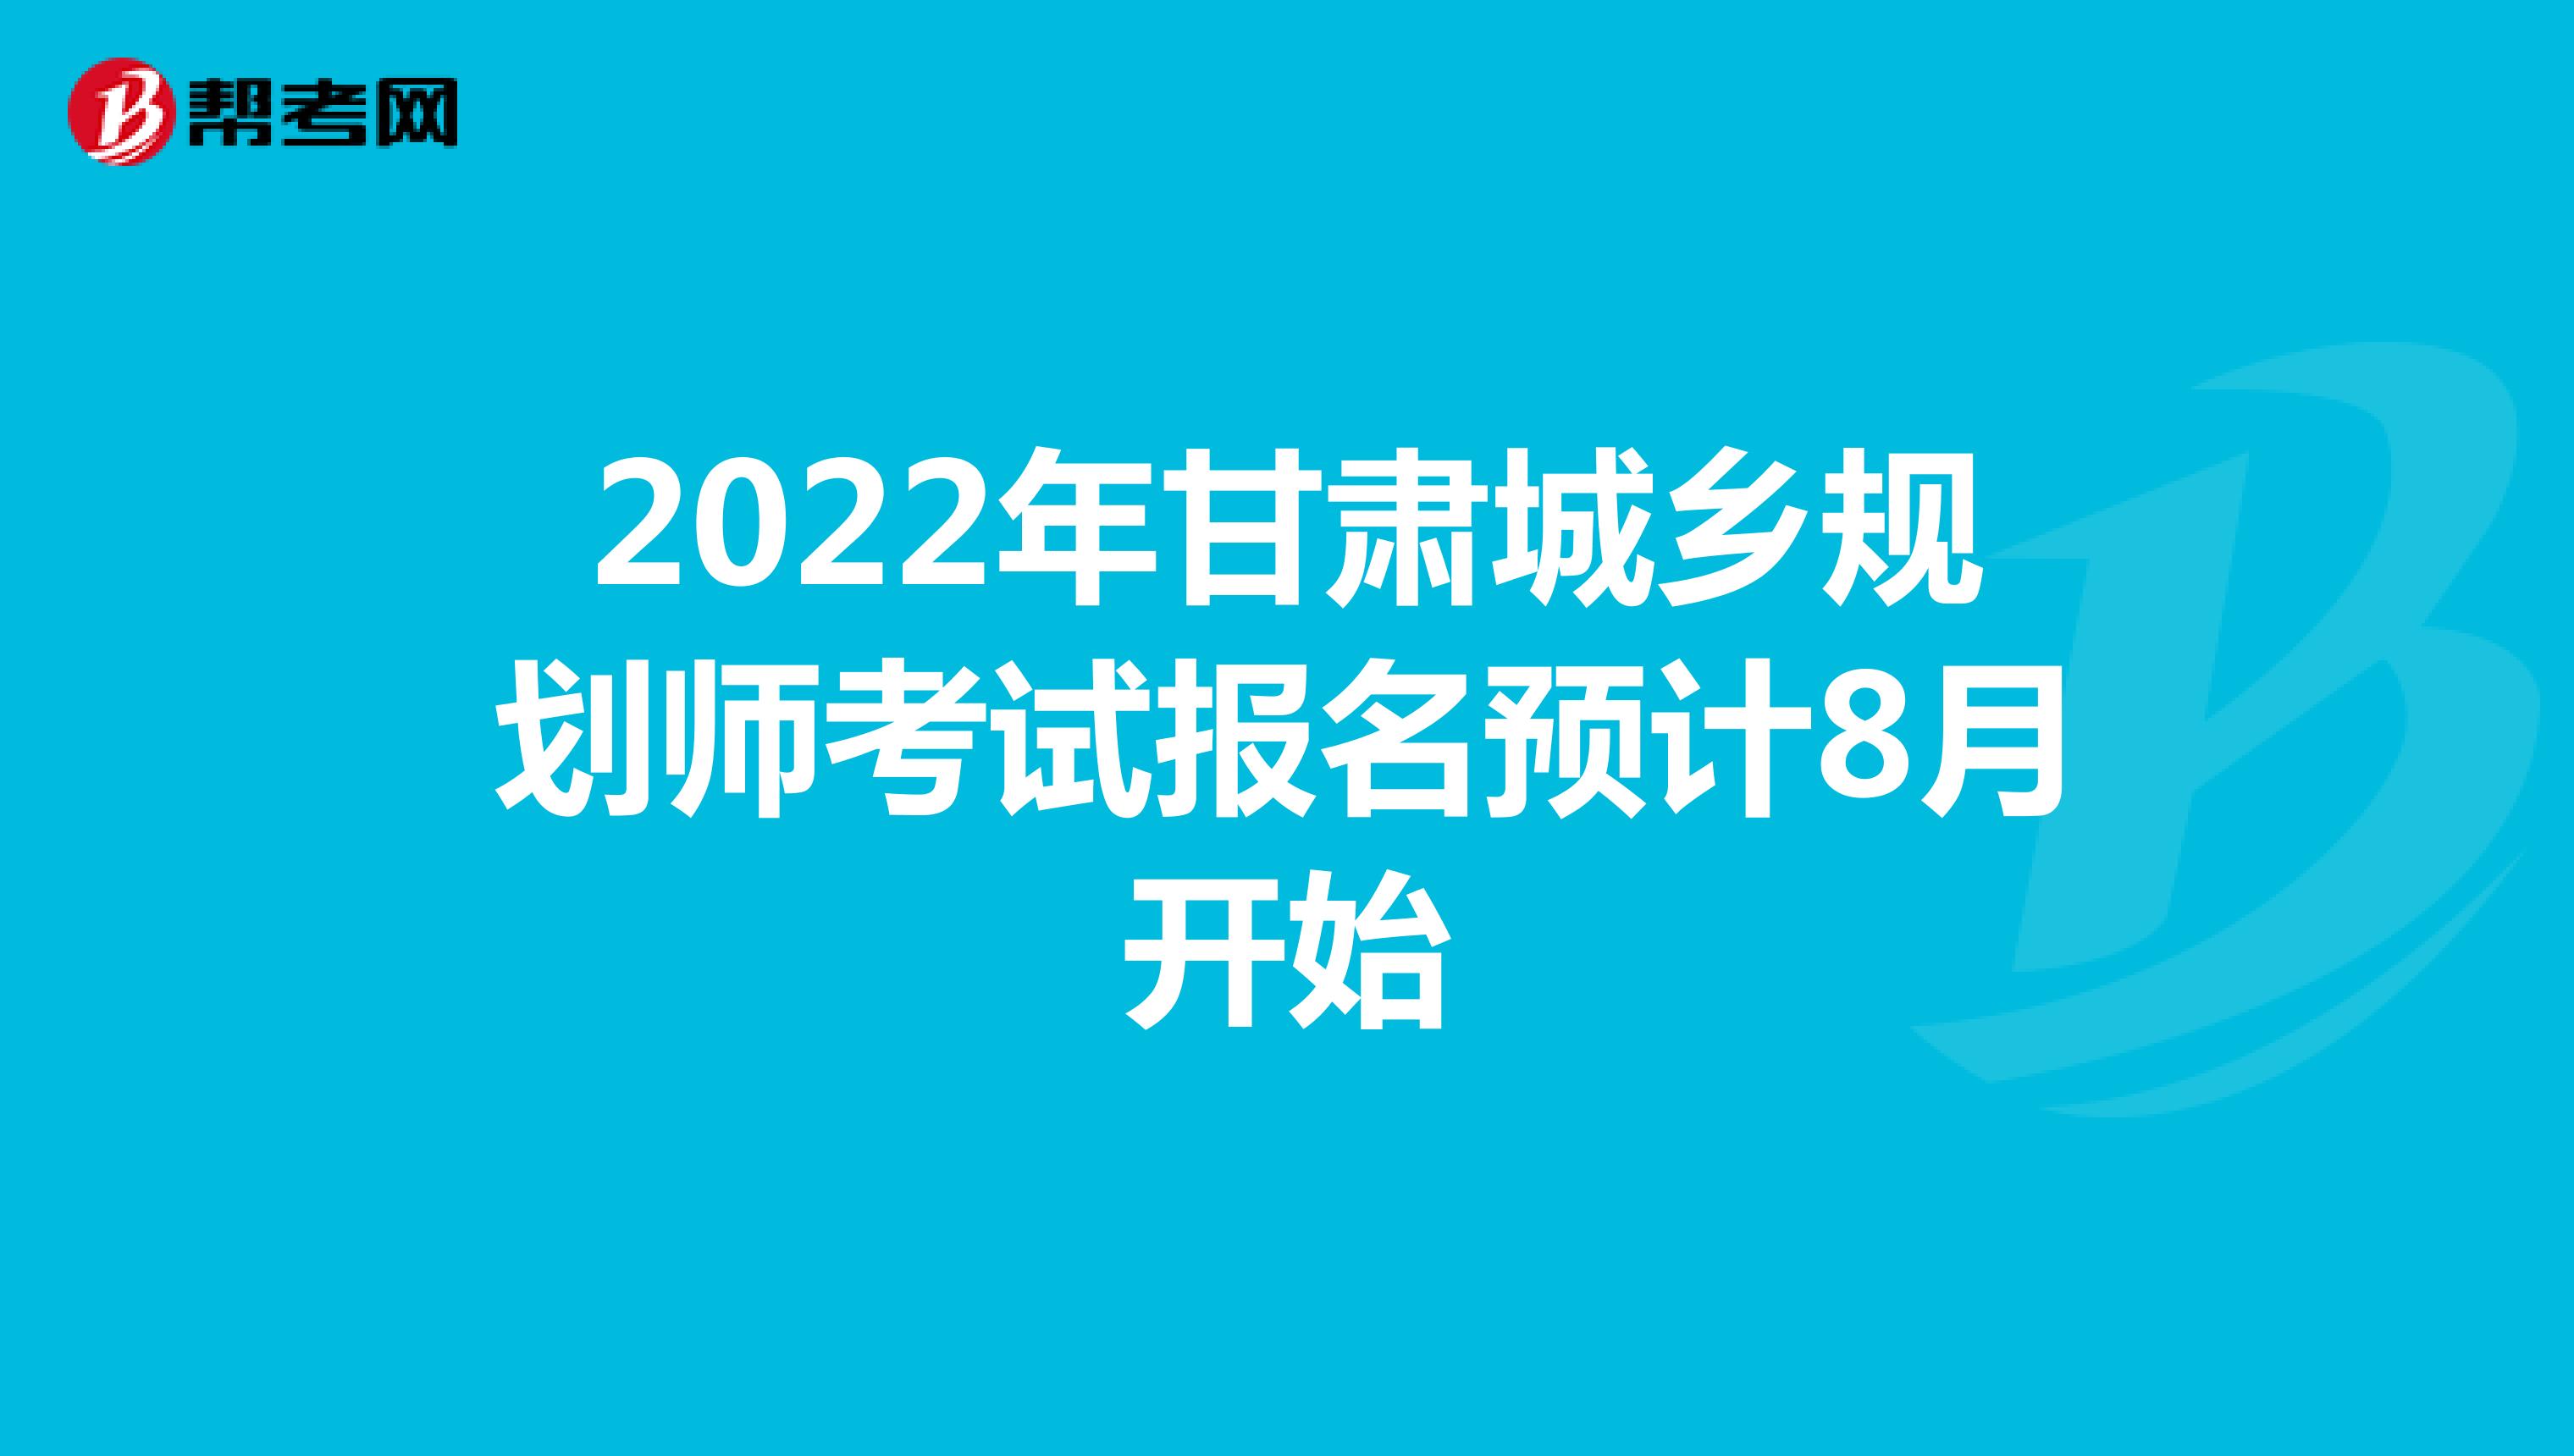 2022年甘肃城乡规划师考试报名预计8月开始